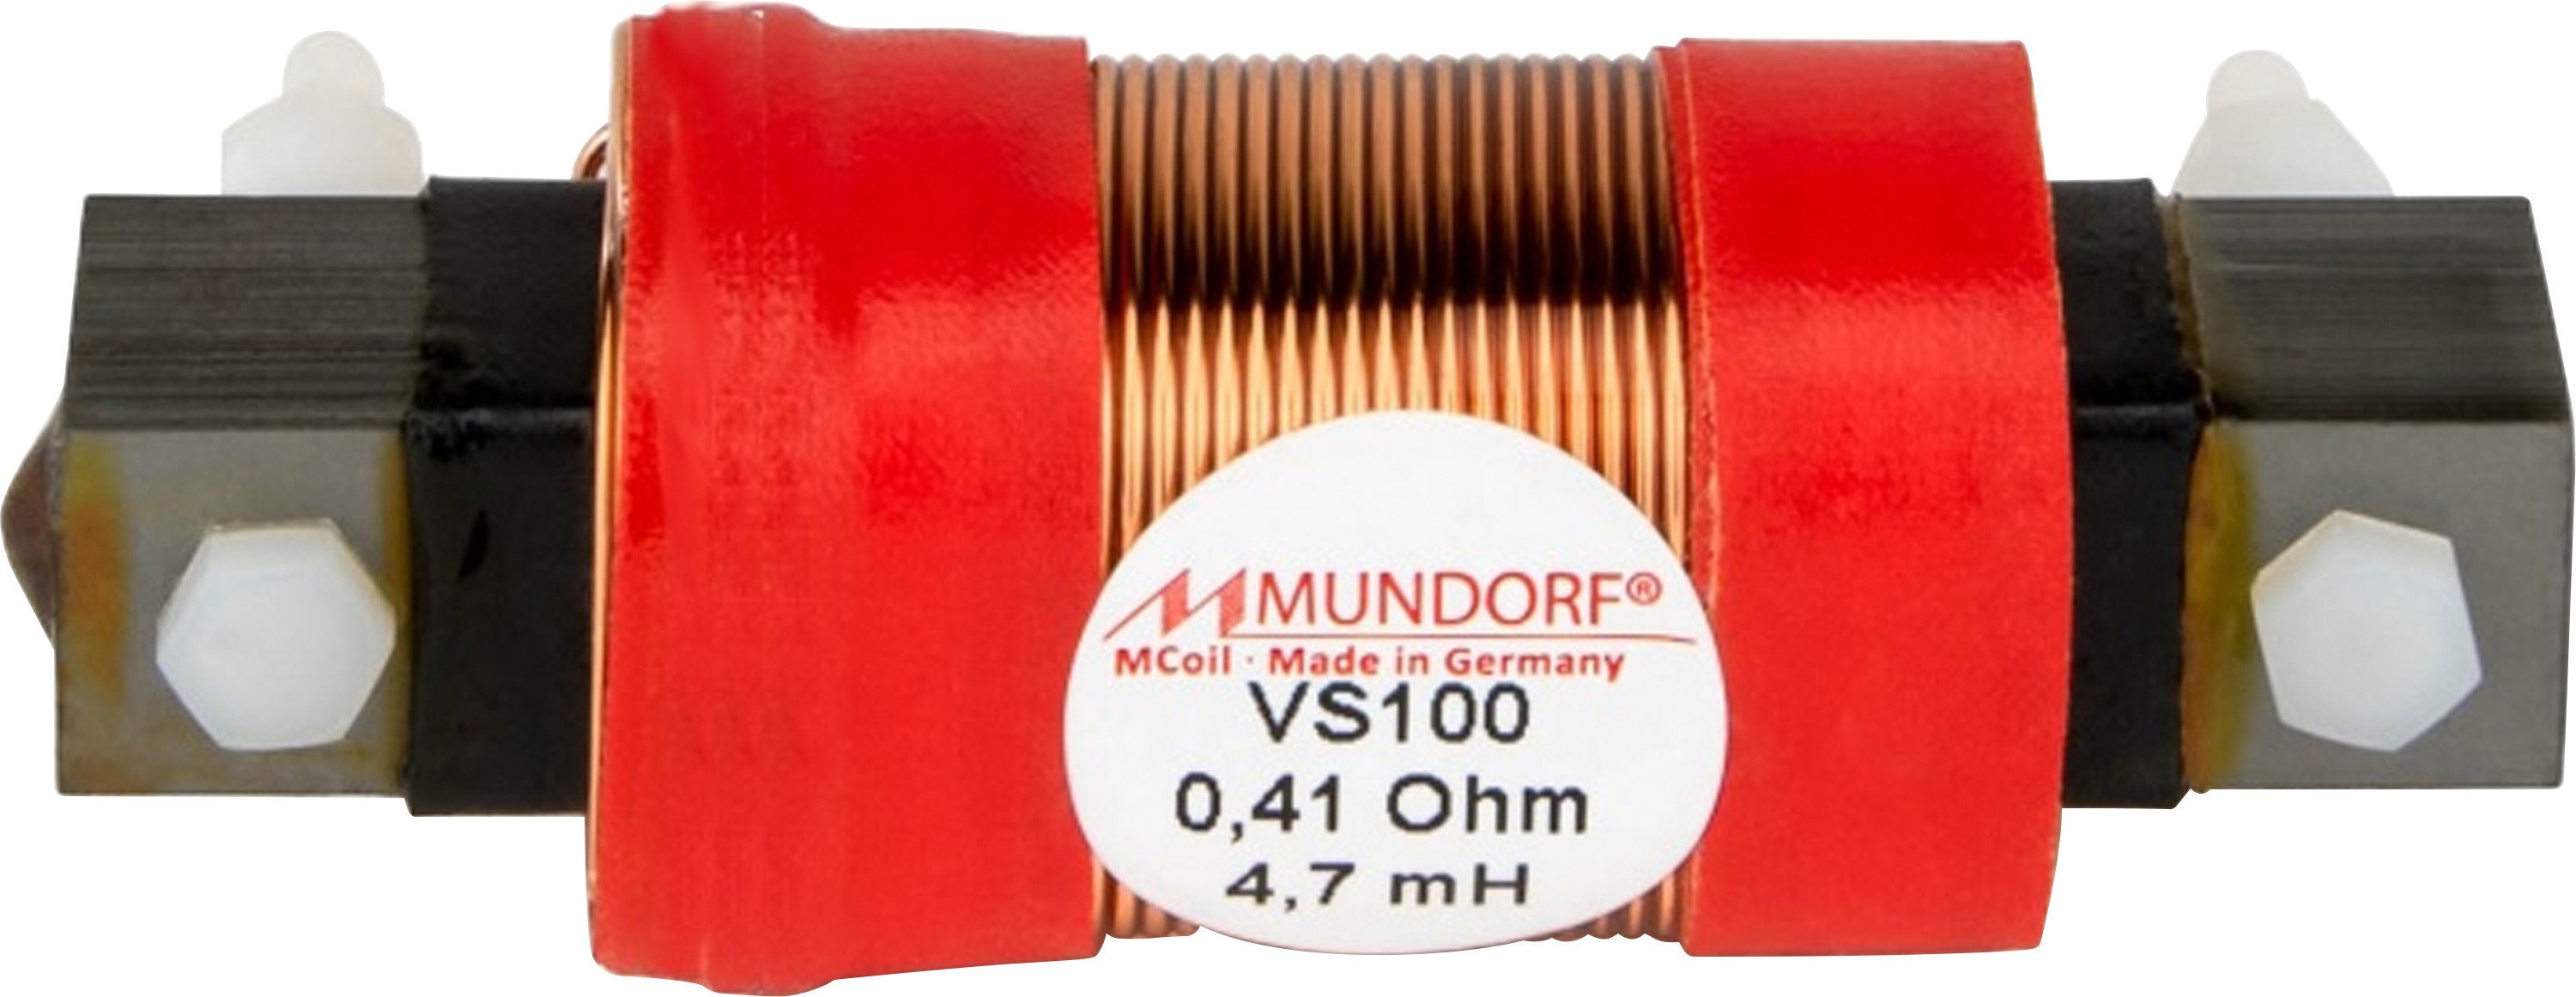 MUNDORF VS100-15 MCOIL ICORE Copper Coil Feron Core 15mH